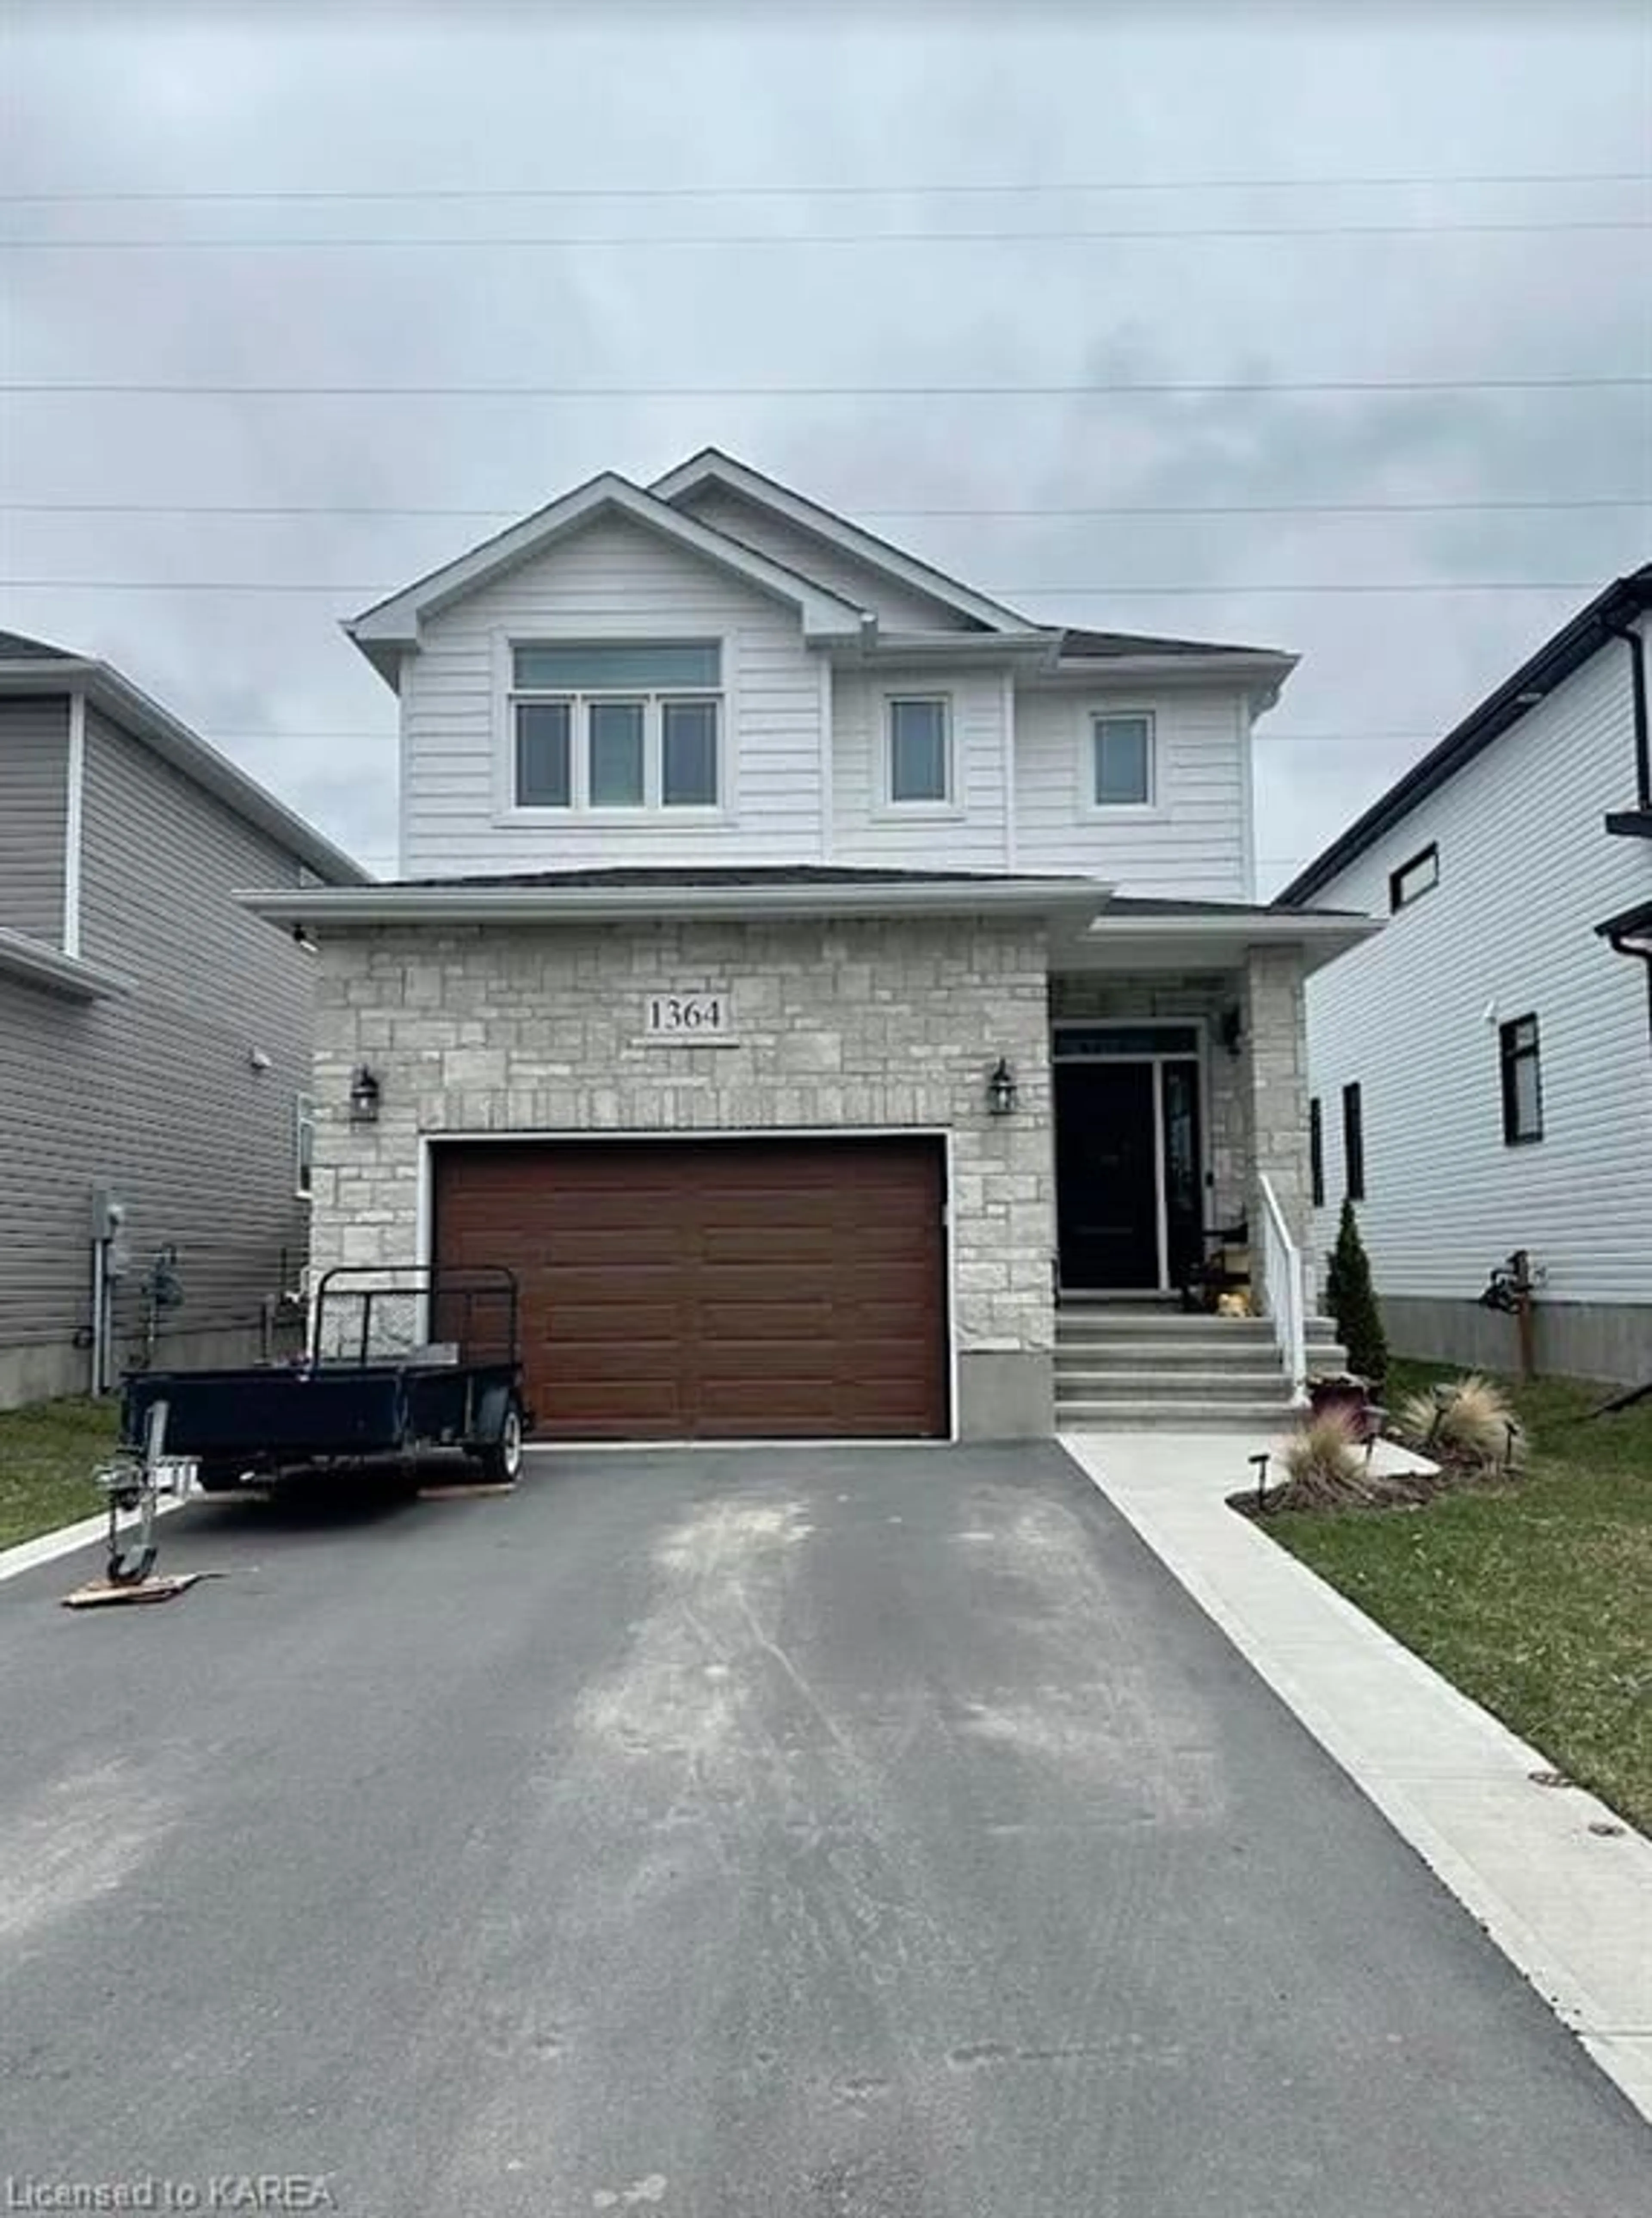 Frontside or backside of a home for 1364 Ottawa St, Kingston Ontario K7P 0C2